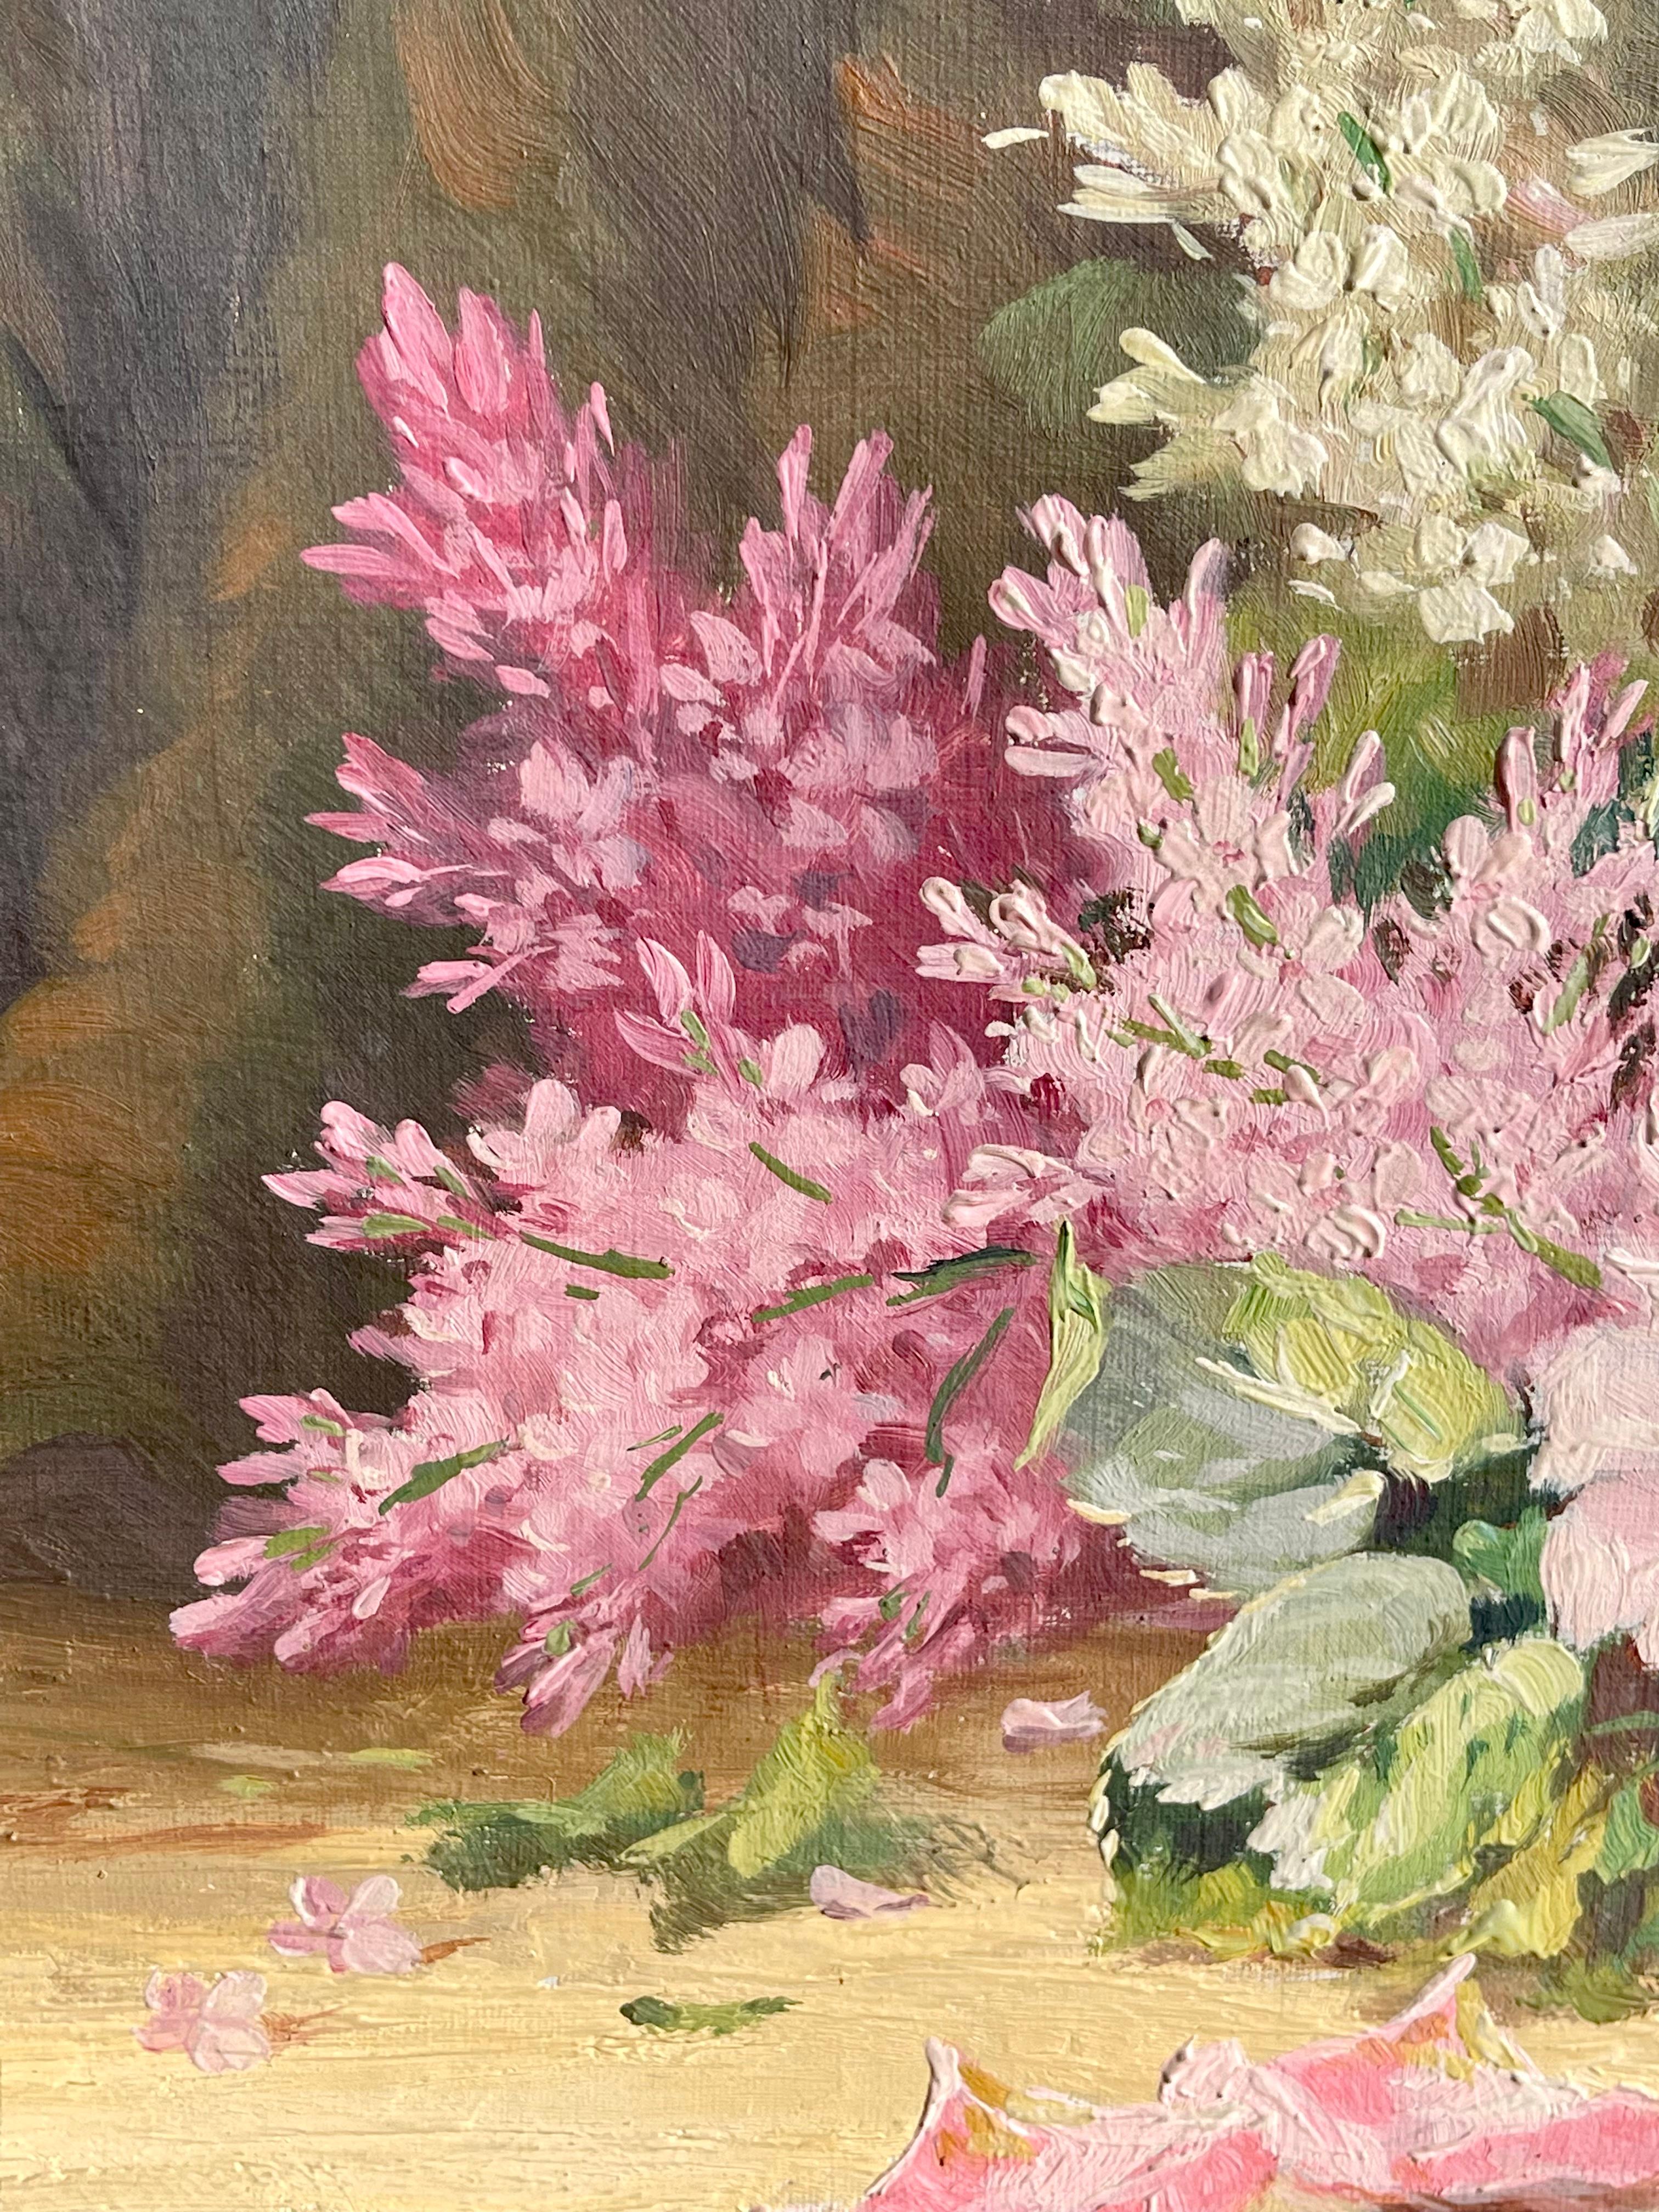 Louis LARTIGAU - Bouquet of Flowers, Oil on Canvas - XIXth century For Sale 1